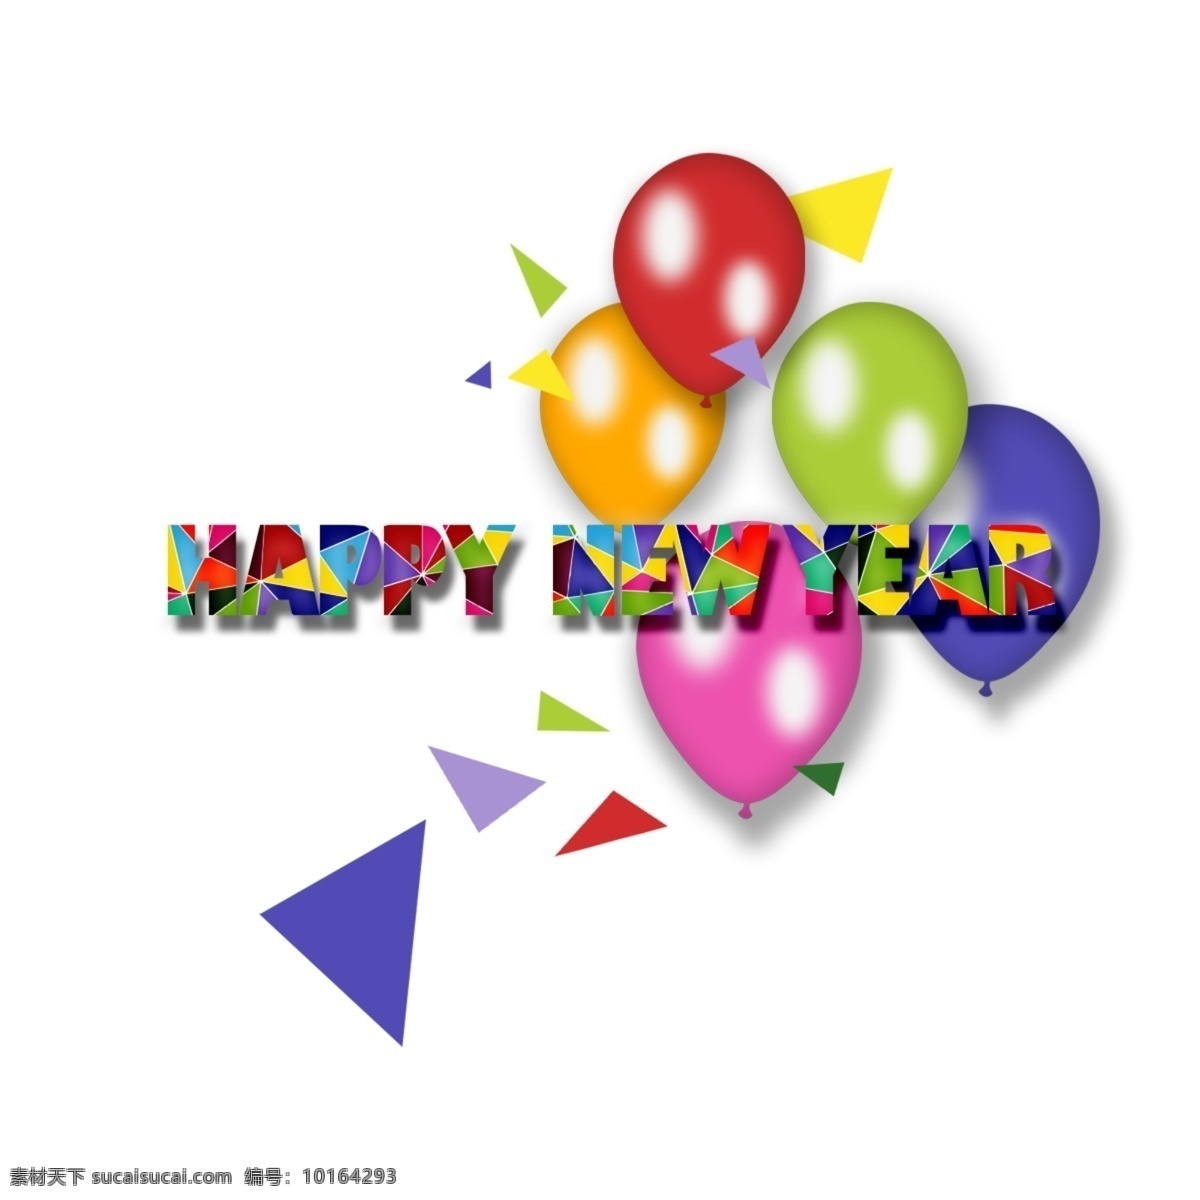 新年 快乐 好 信 气球 艺术 个性 元素 艺术个性元素 新年快乐 新年的元素 节日元素 png元素 透明的元素 元素的设计